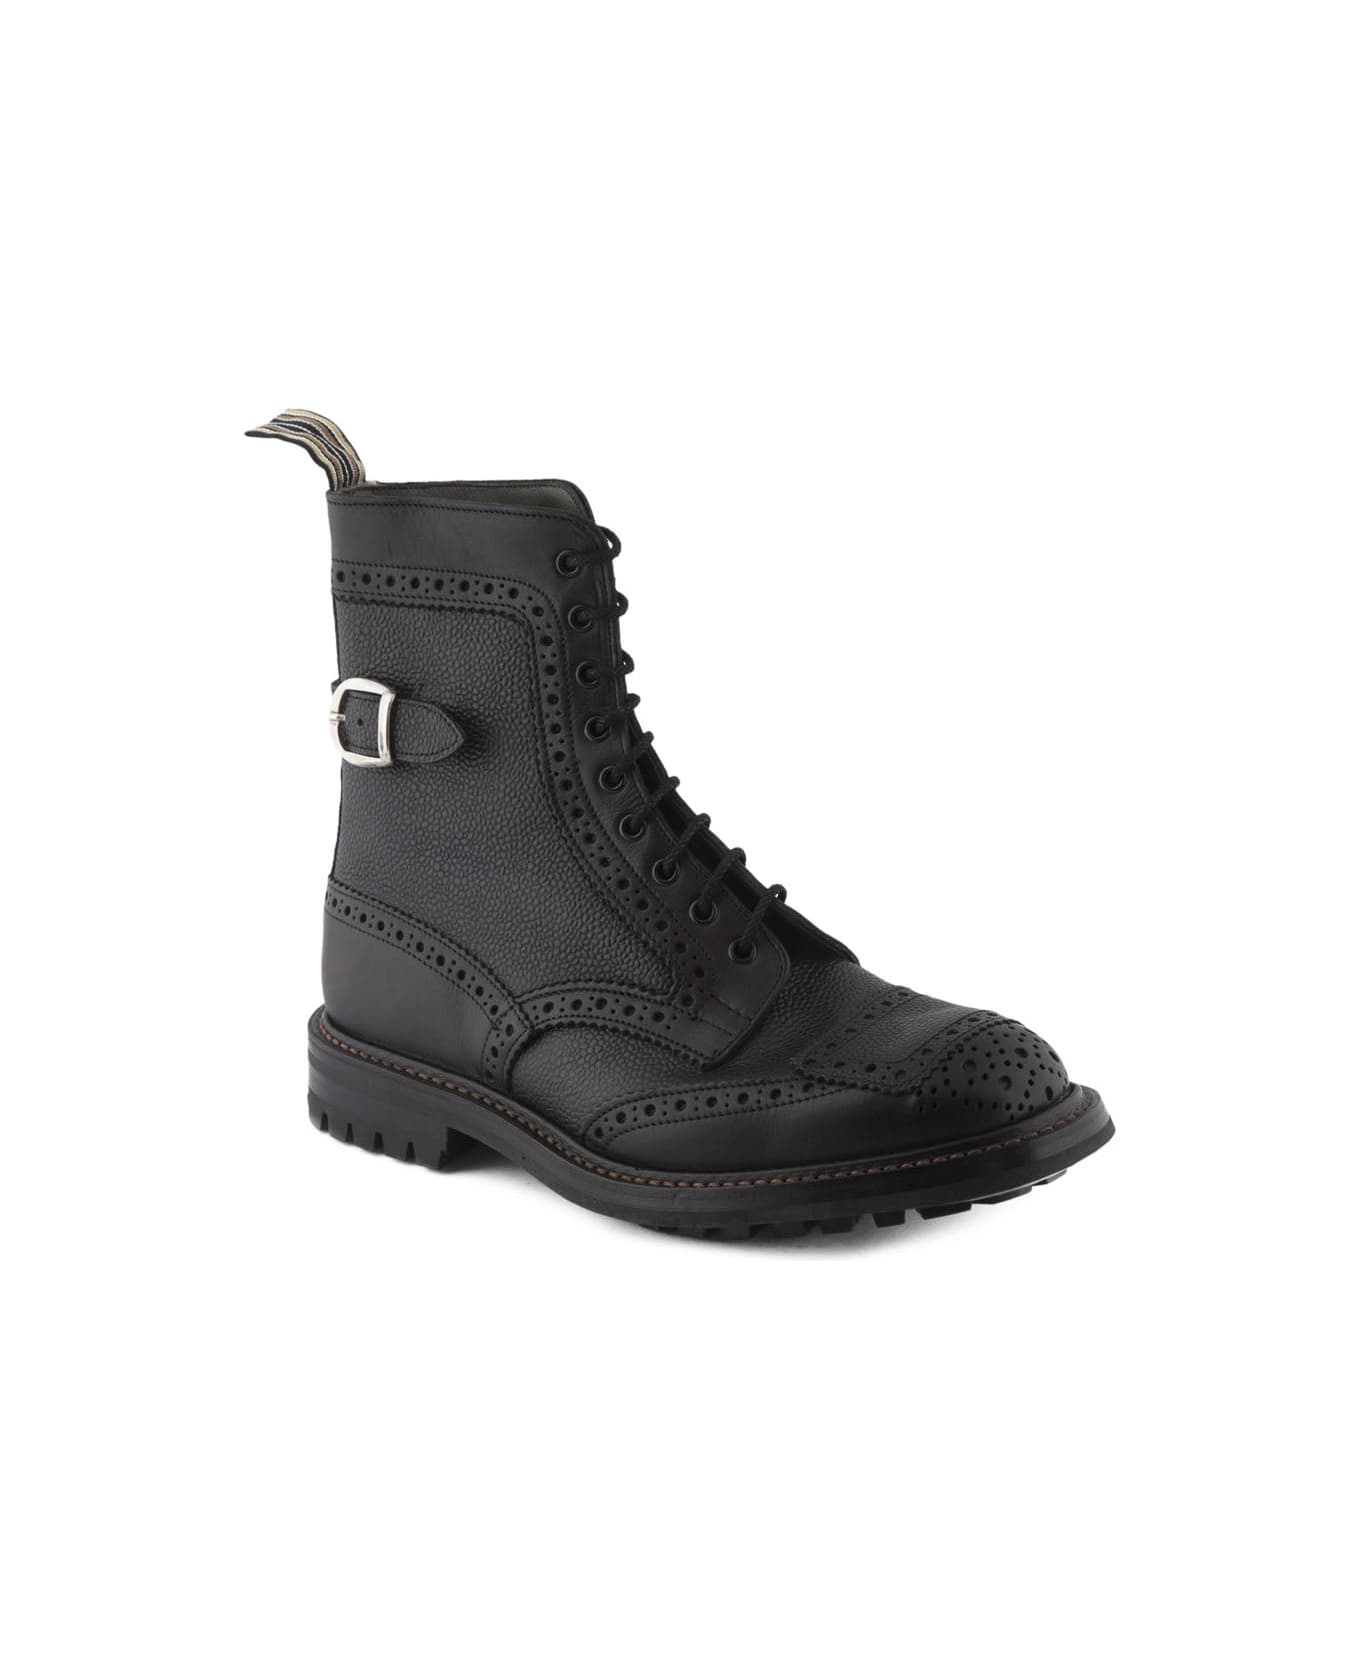 Tricker's Sheene 7565 Black Grain Calf Derby Boot - Nero ブーツ